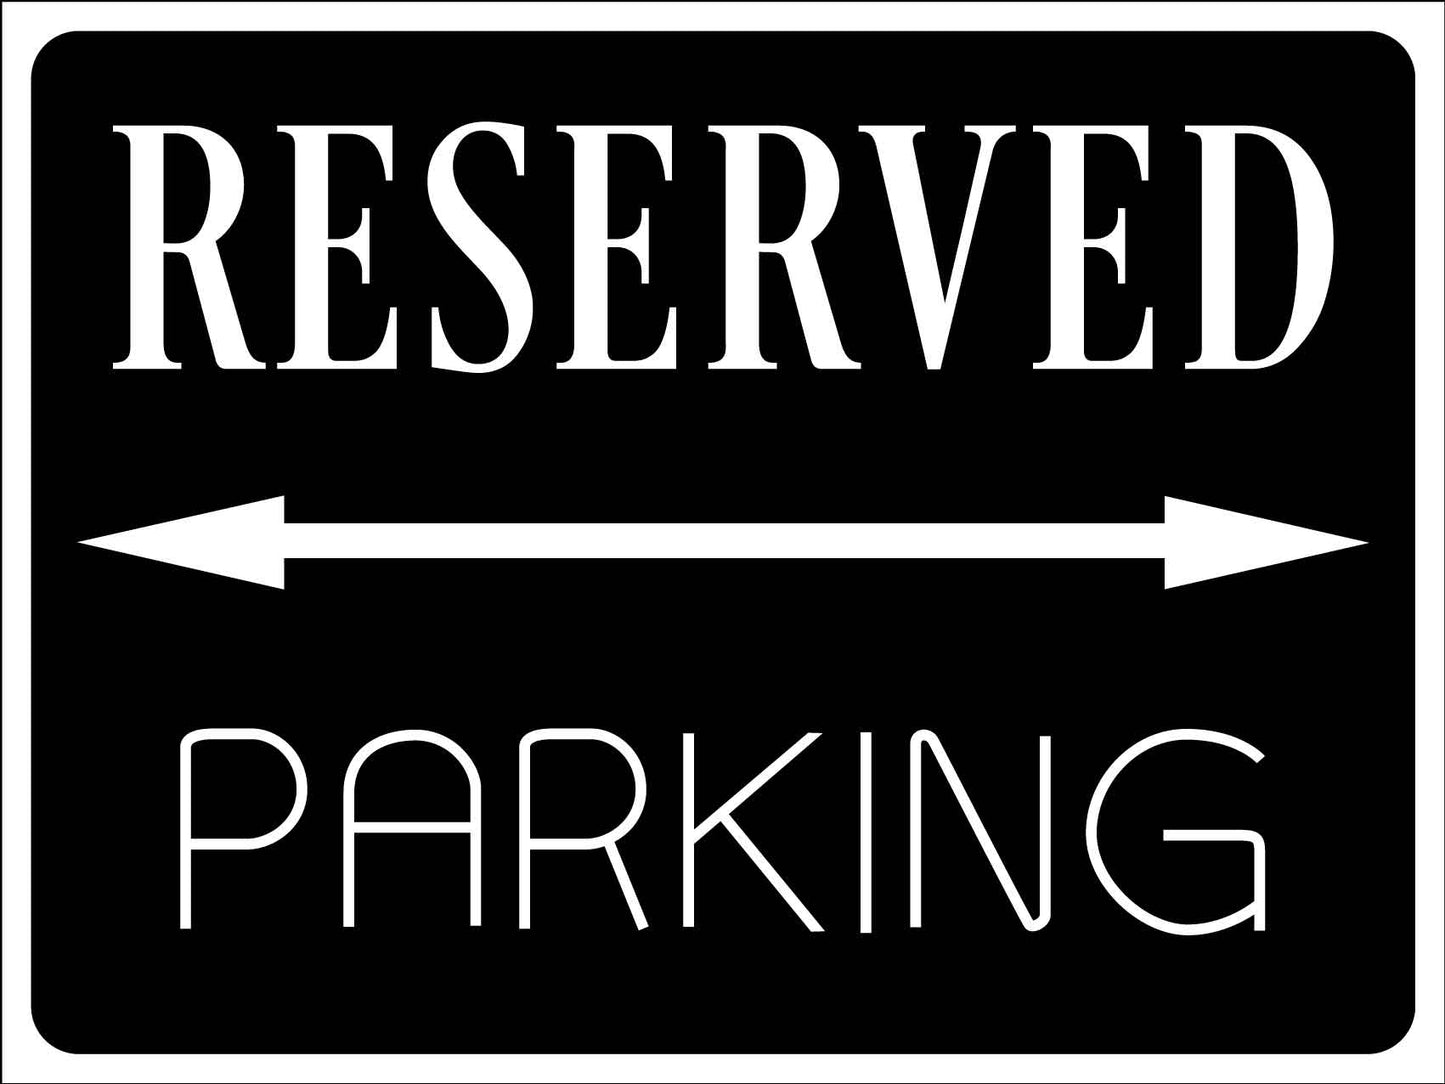 Reserved Parking Black Sign